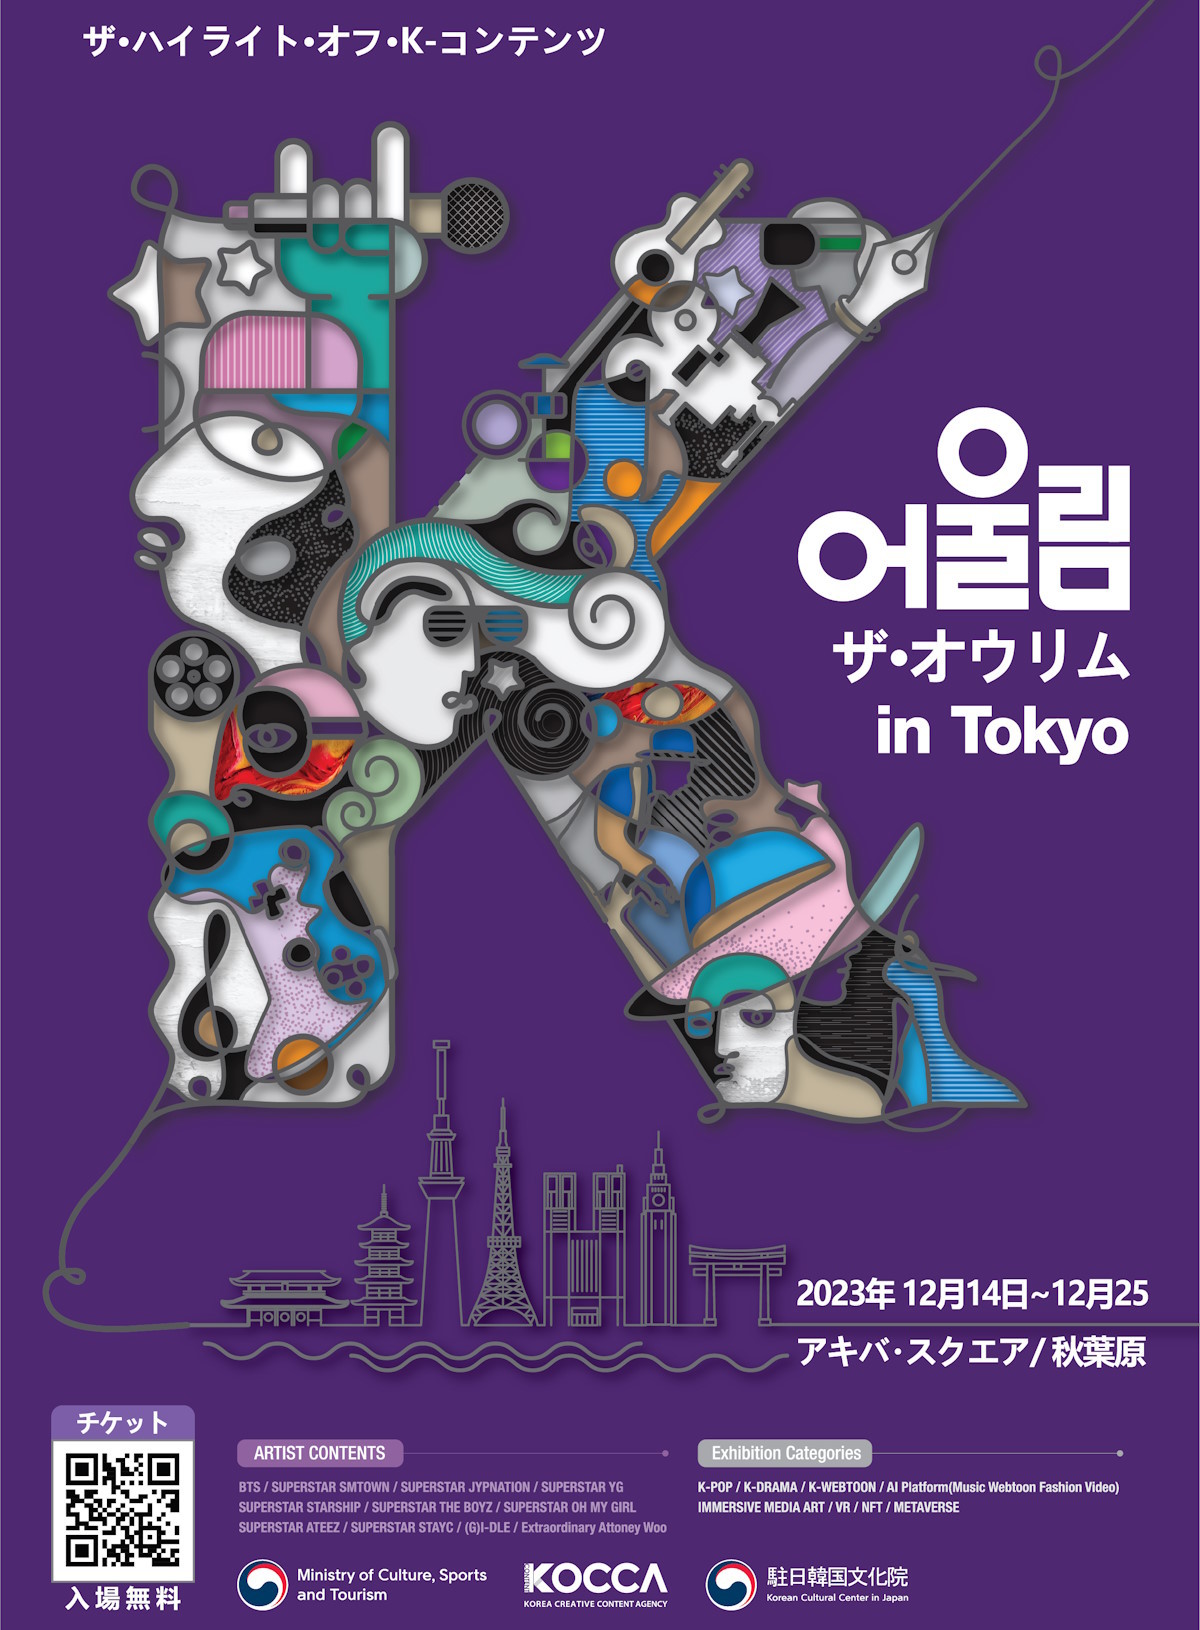 韓国コンテンツ振興院、「The Oulim (調和) in Tokyo」